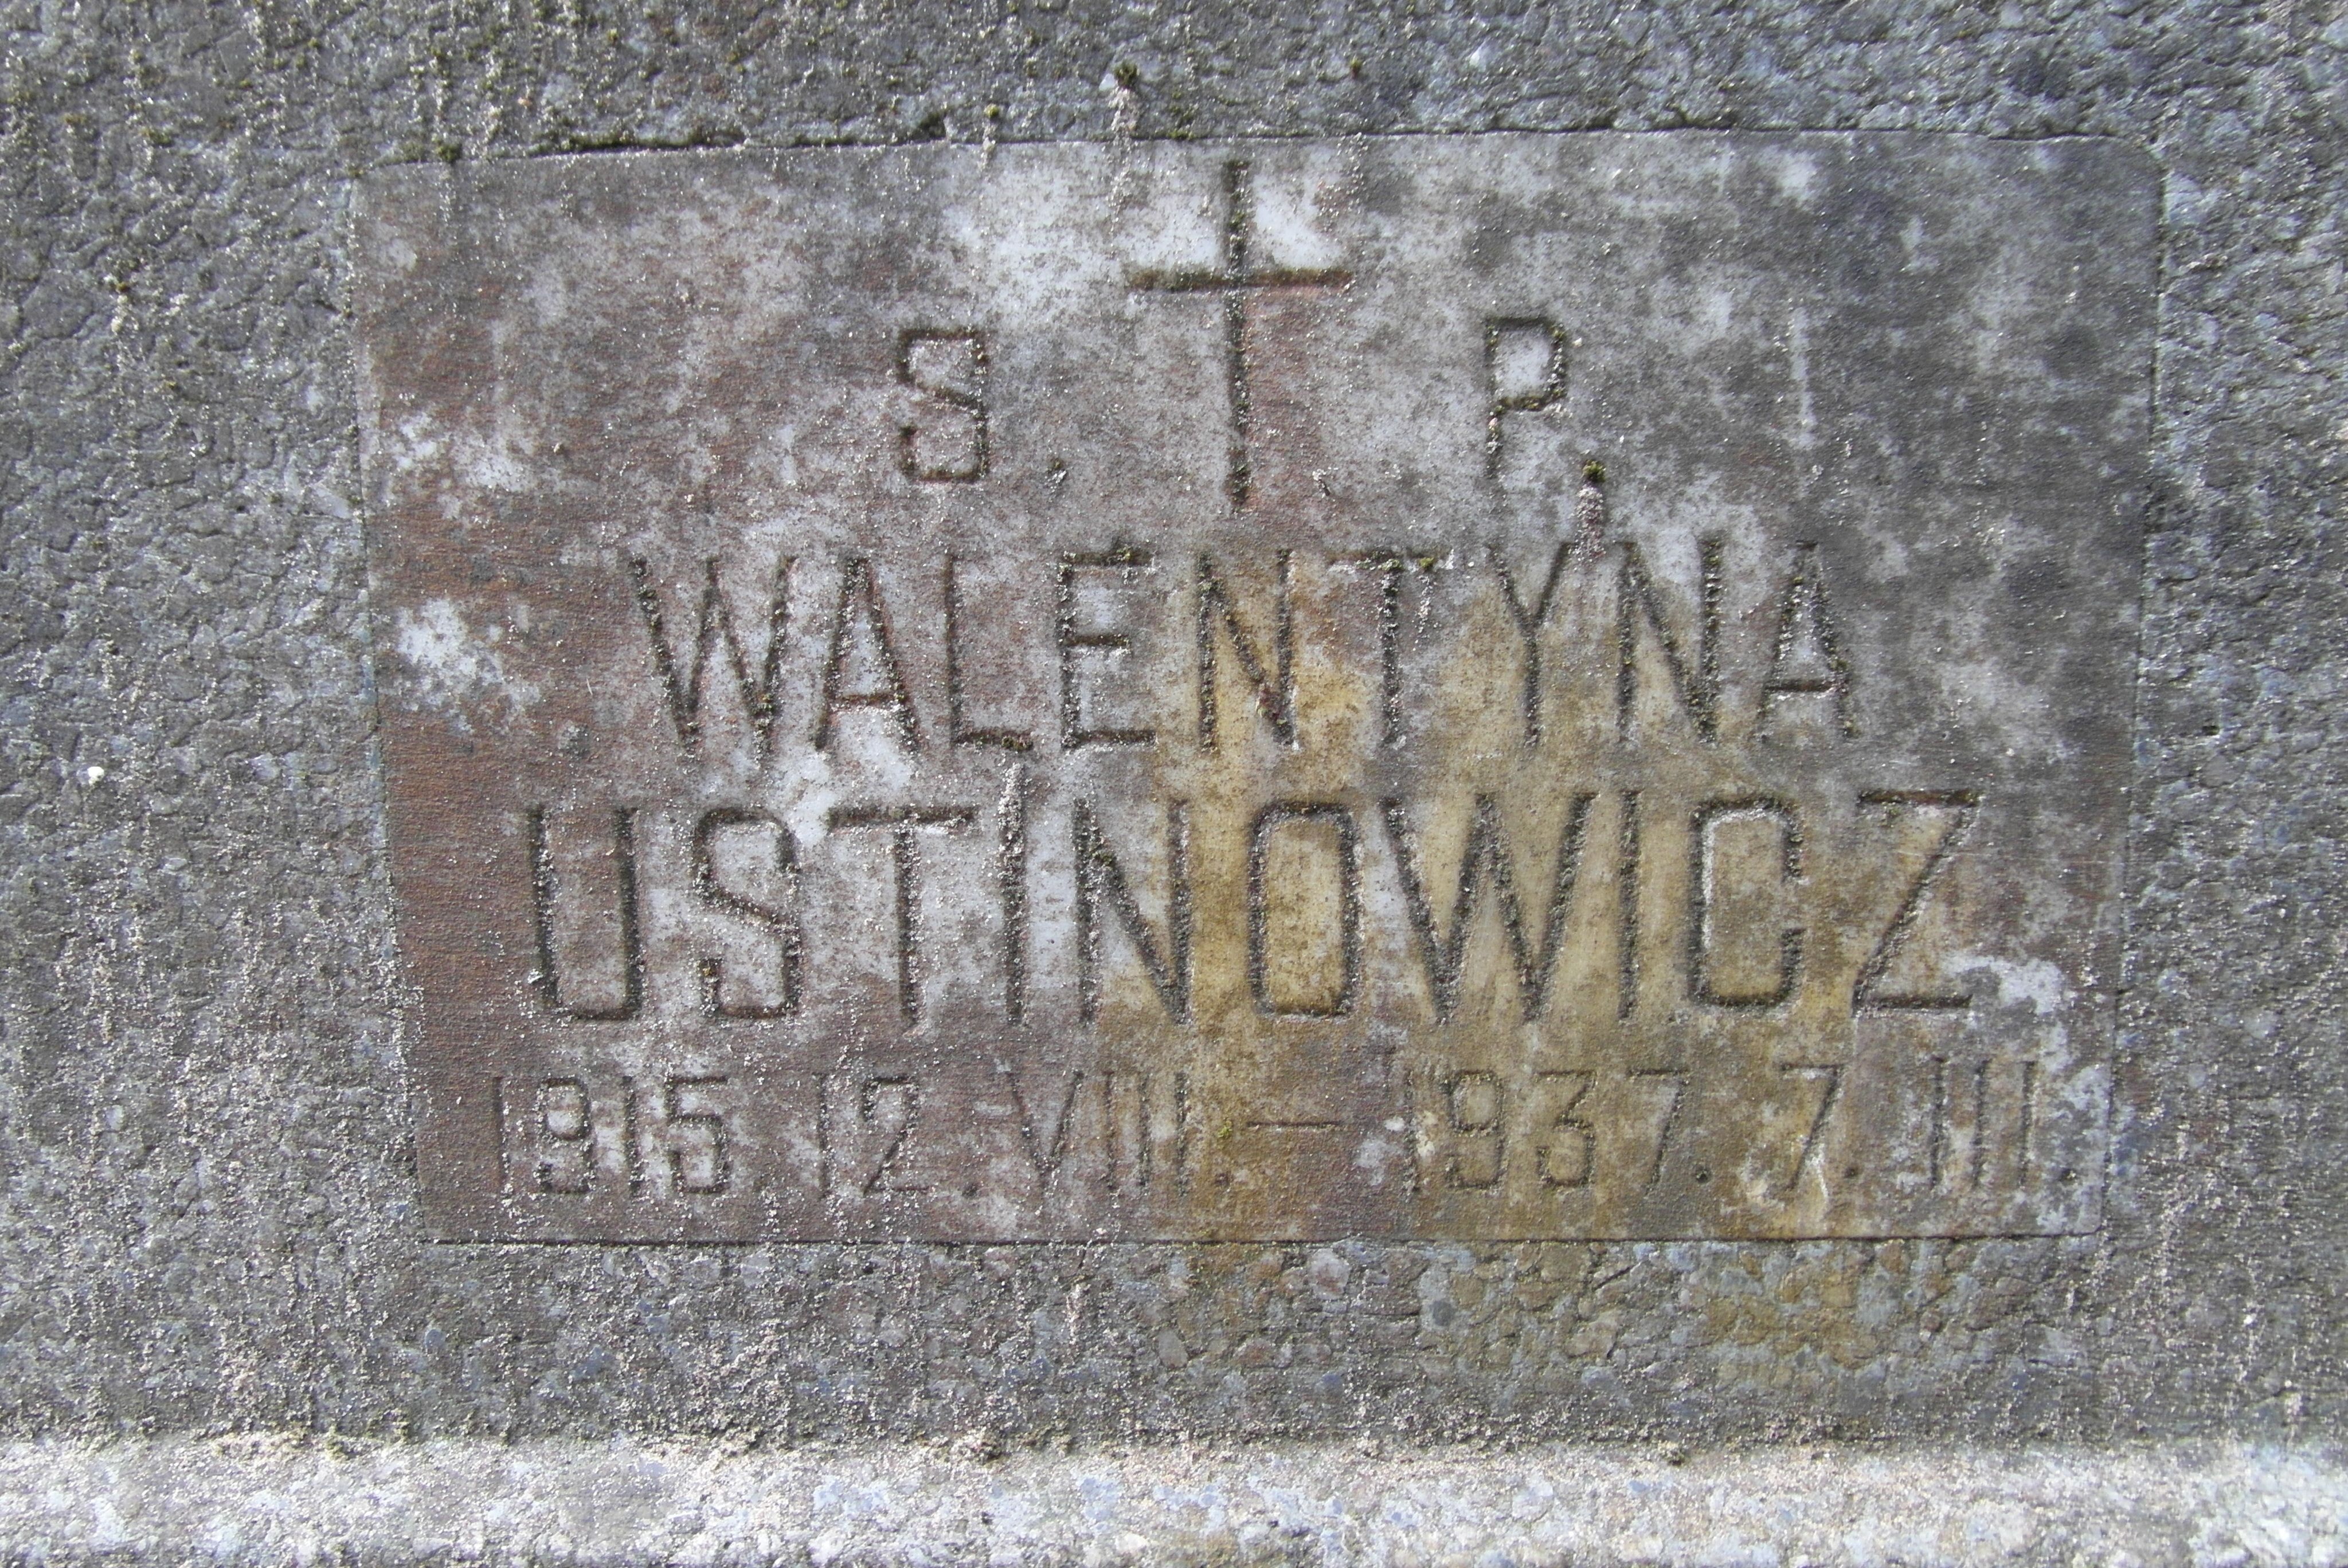 Napis z nagrobka Walentyny Ustinowicz, cmentarz św. Michała w Rydze, stan z 2021 r.